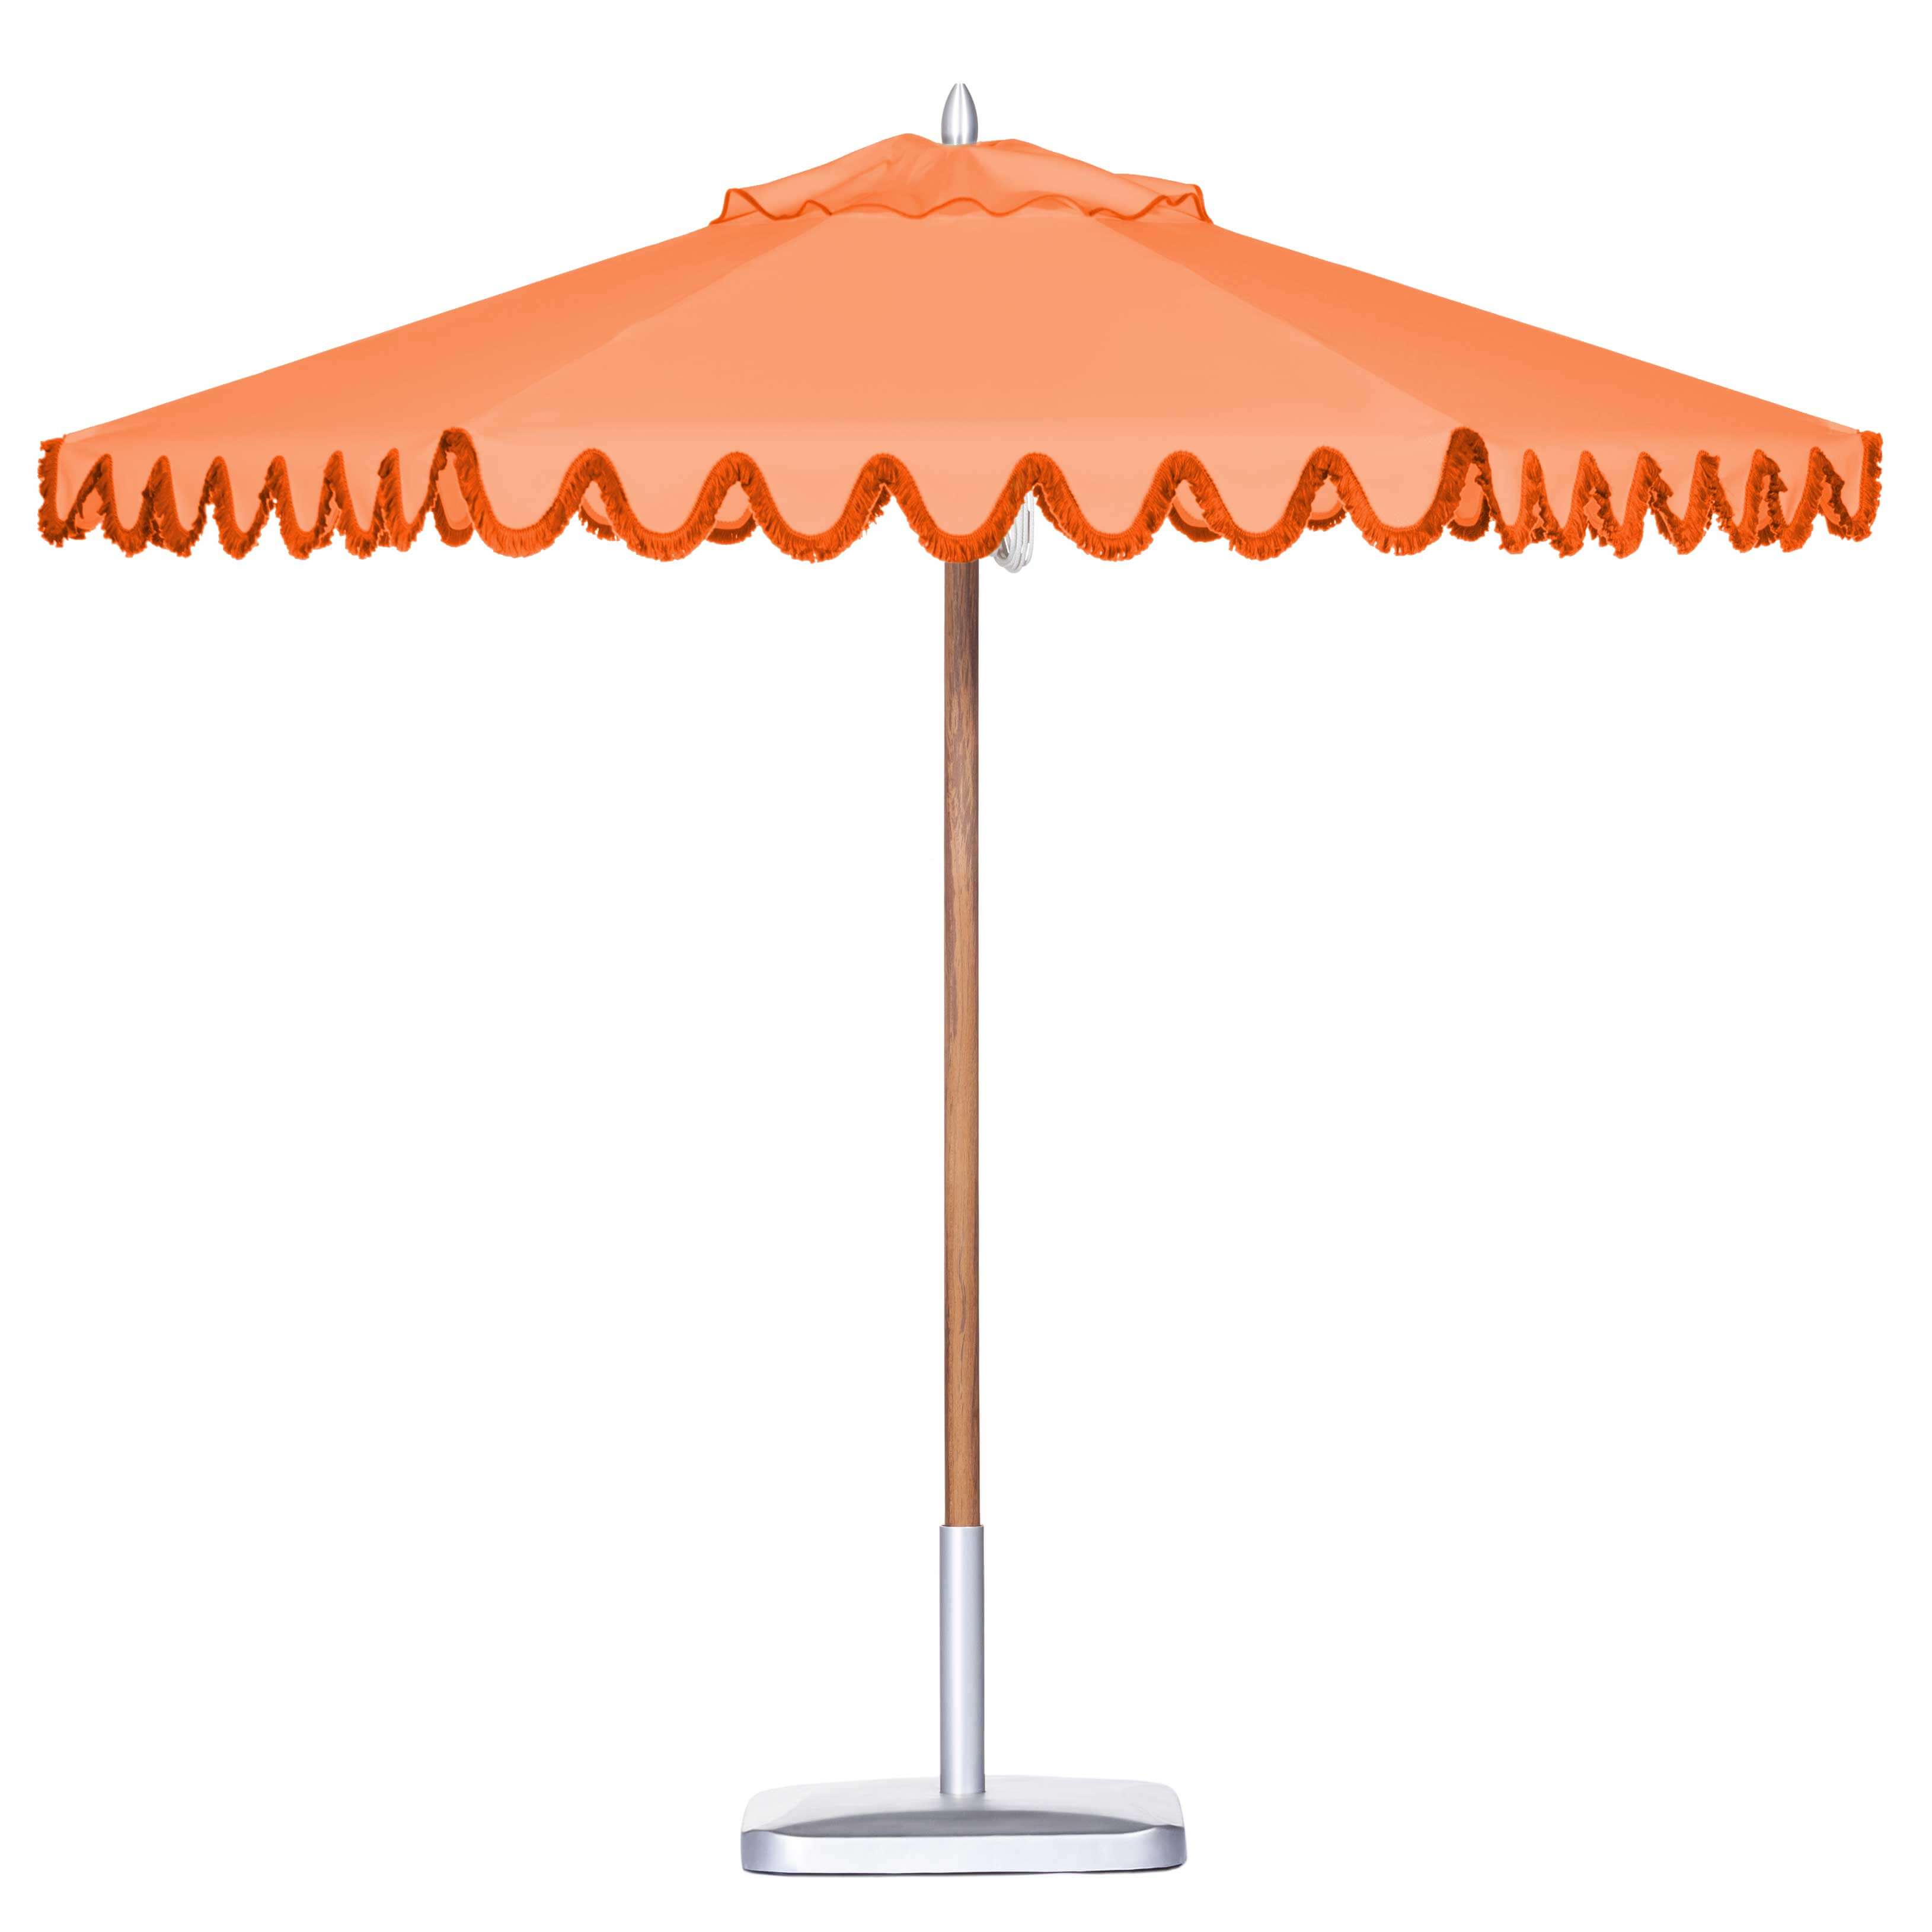 Mandarin Orange Umbrella Image